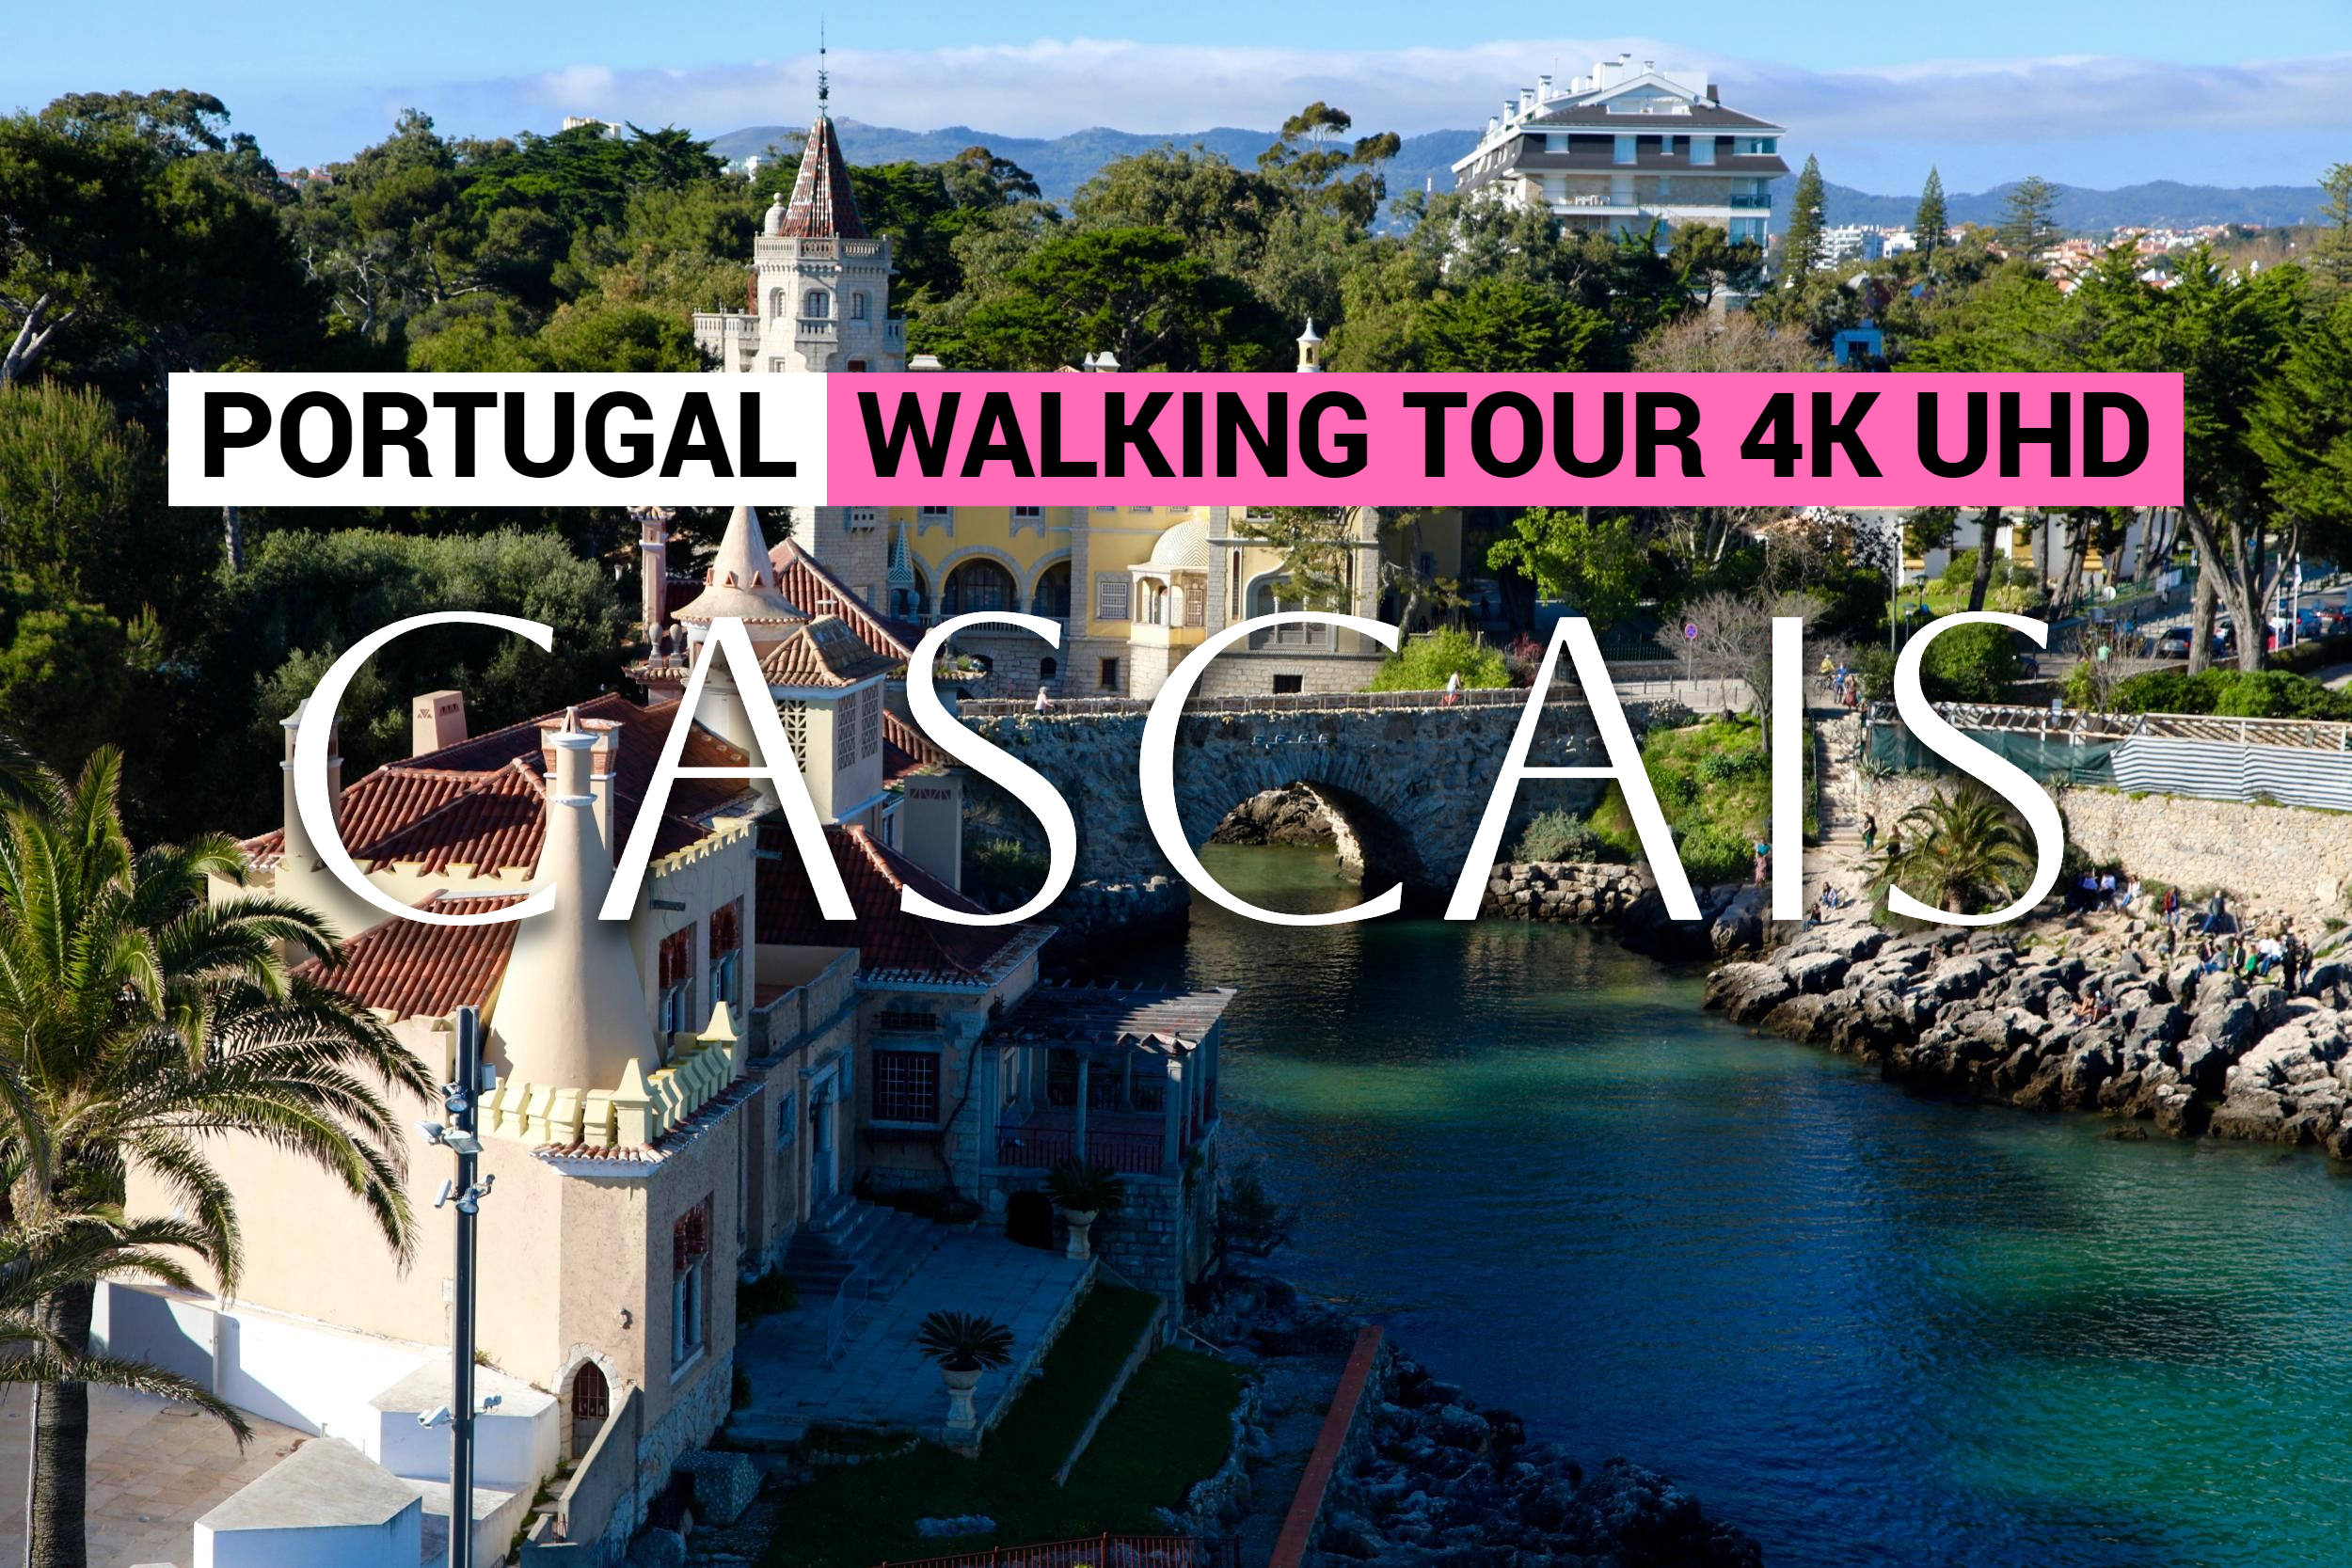 Кашкайш - Cascais, Portugal - Путешествие по прекрасному Португальскому городку. Отдых в Европе